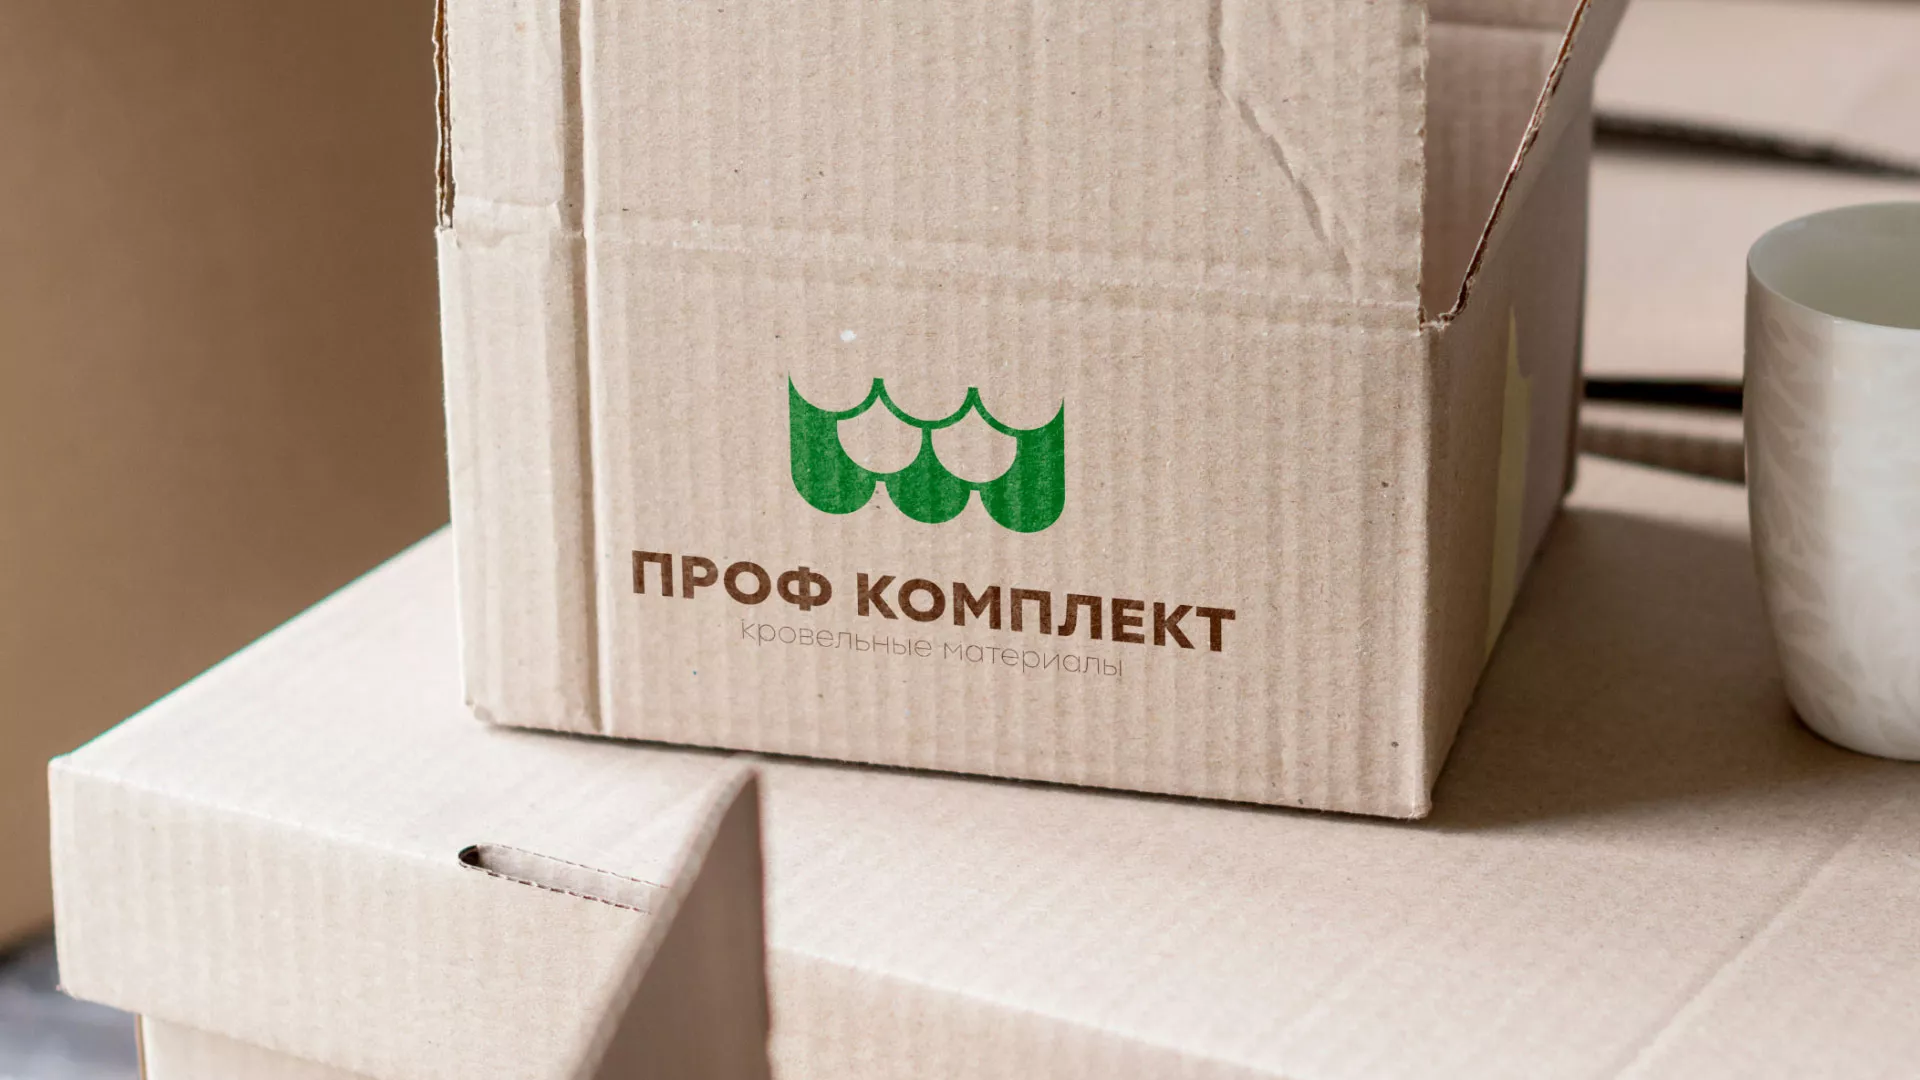 Создание логотипа компании «Проф Комплект» в Вёшках